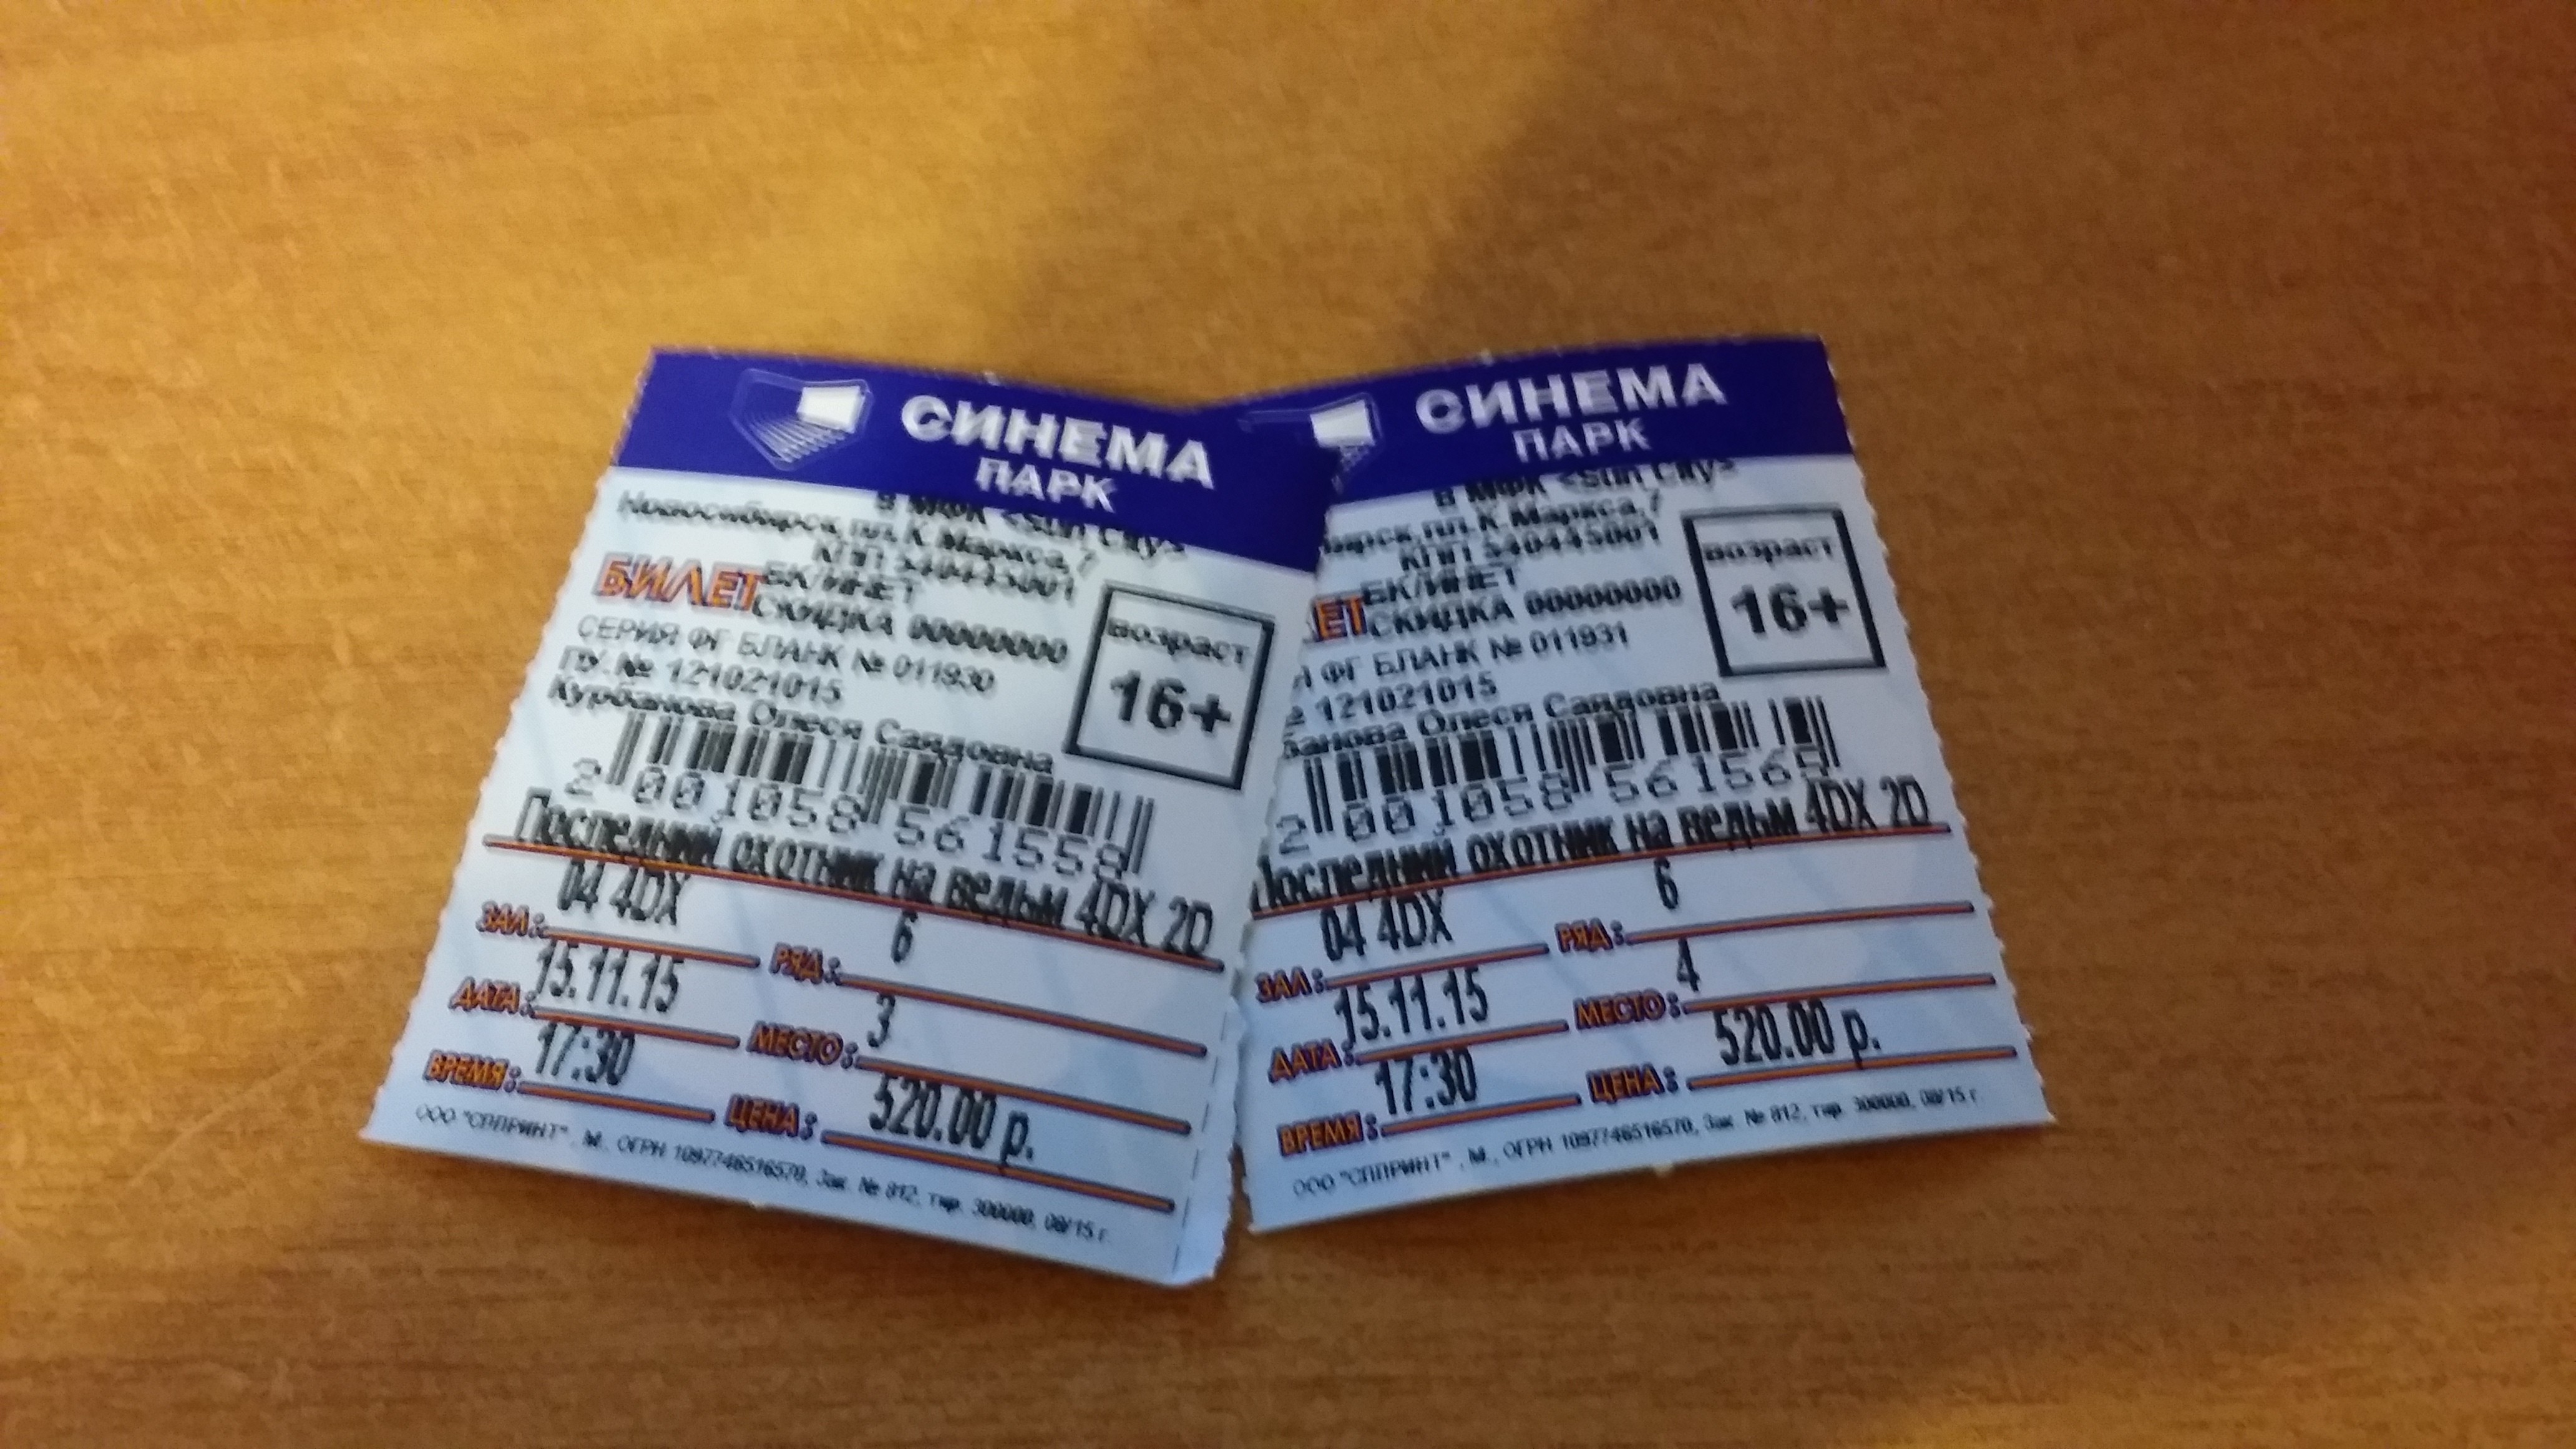 Билеты в кинотеатр новосибирск